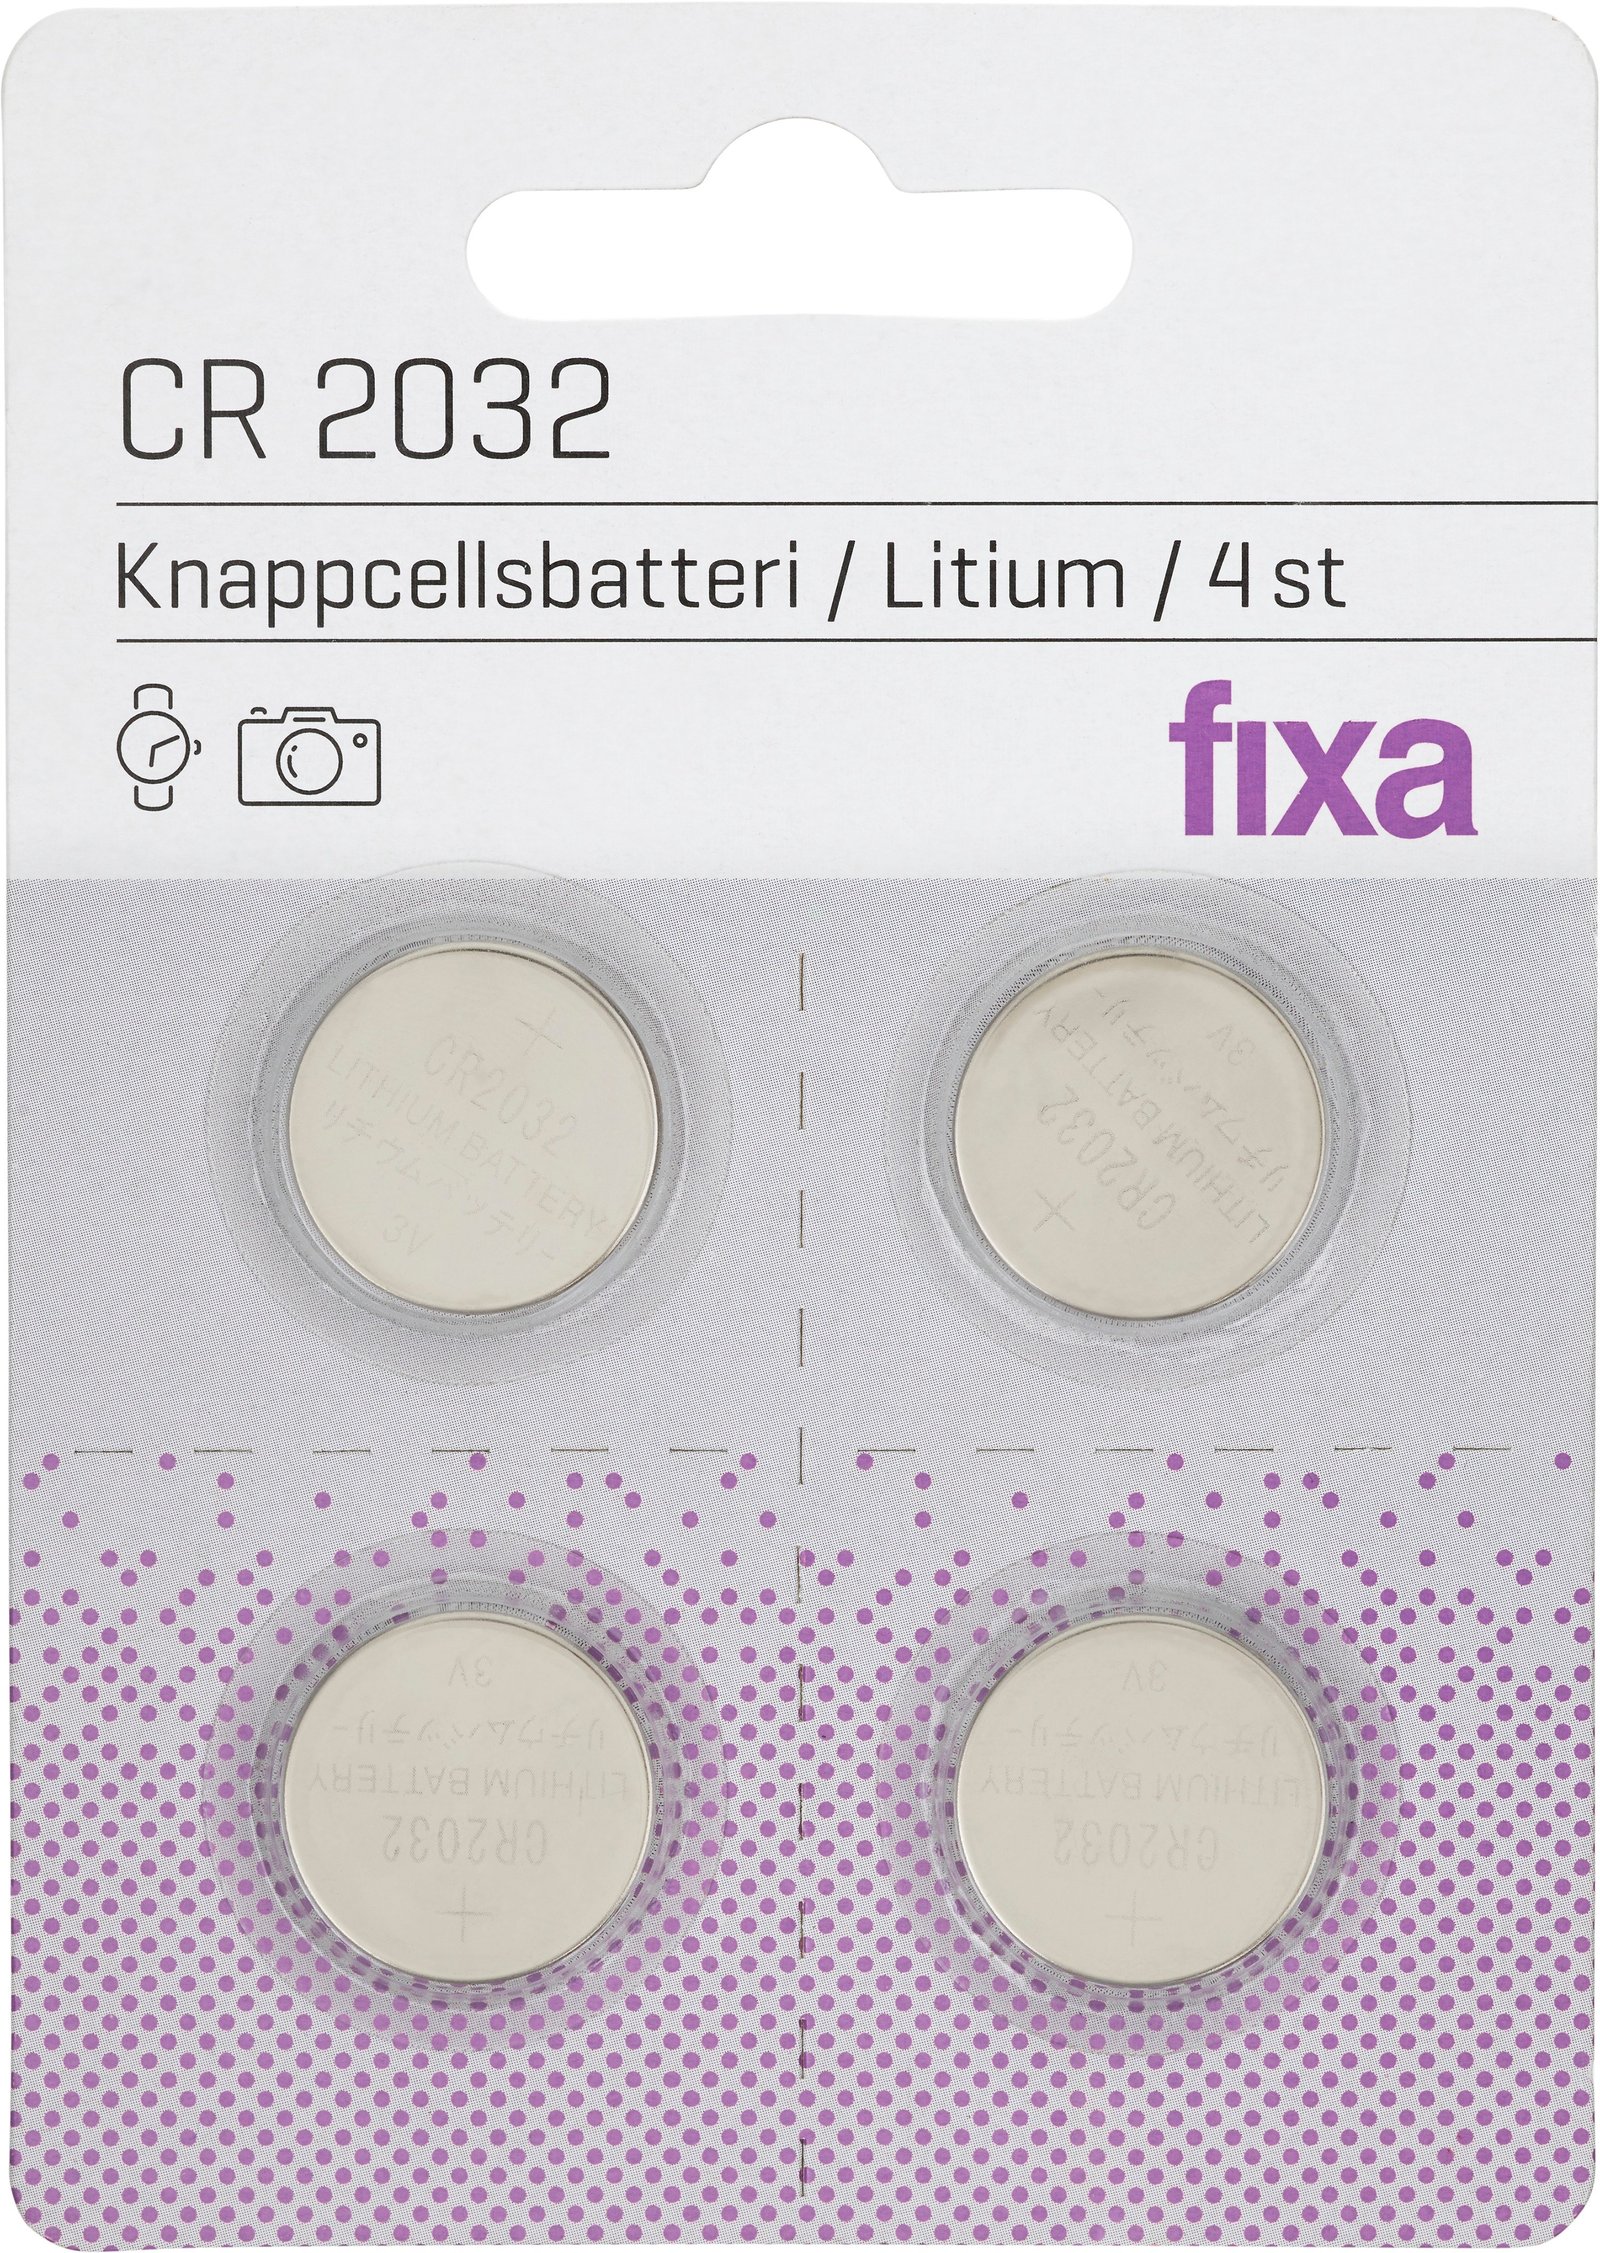 Fixa Knappcellsbatterier 2032 4 st